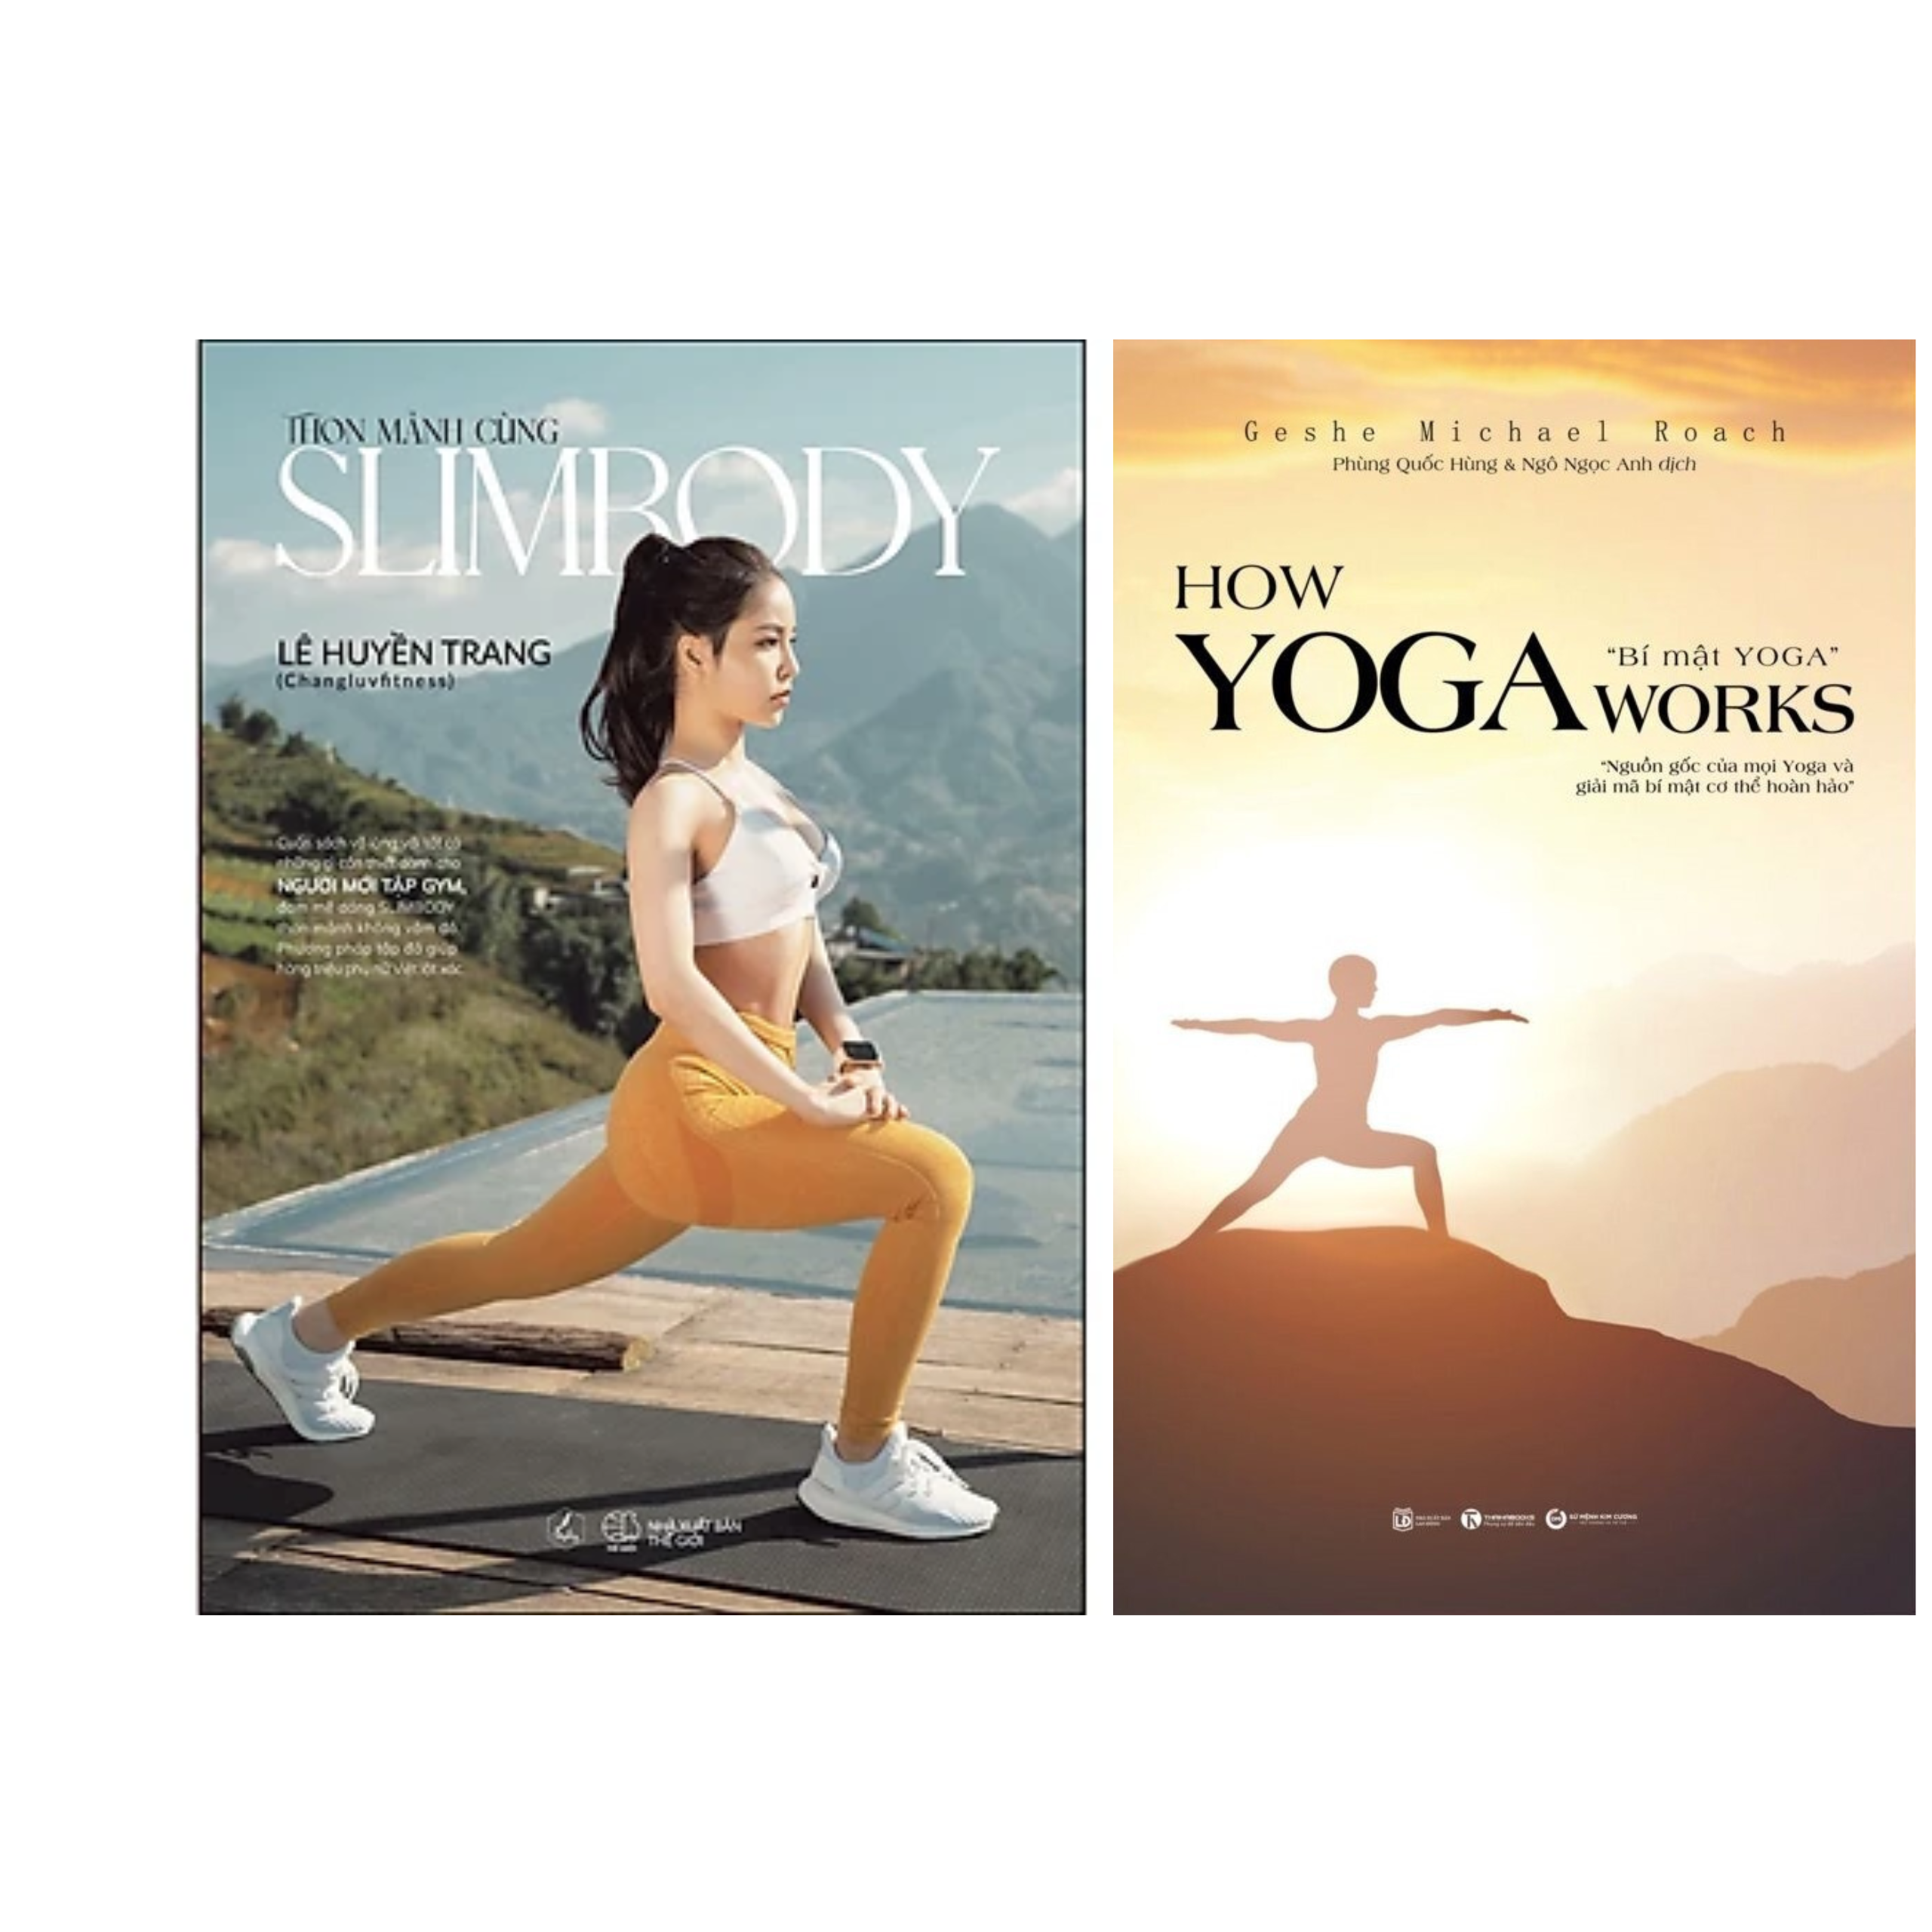 Combo 2Q Sách Tập Luyện Rèn Luyện Sức Khỏe : How Yoga Works - Nguồn Gốc Yoga và Bí Mật Cơ Thể Hoàn Hảo  + Thon Mảnh Cùng SlimBody